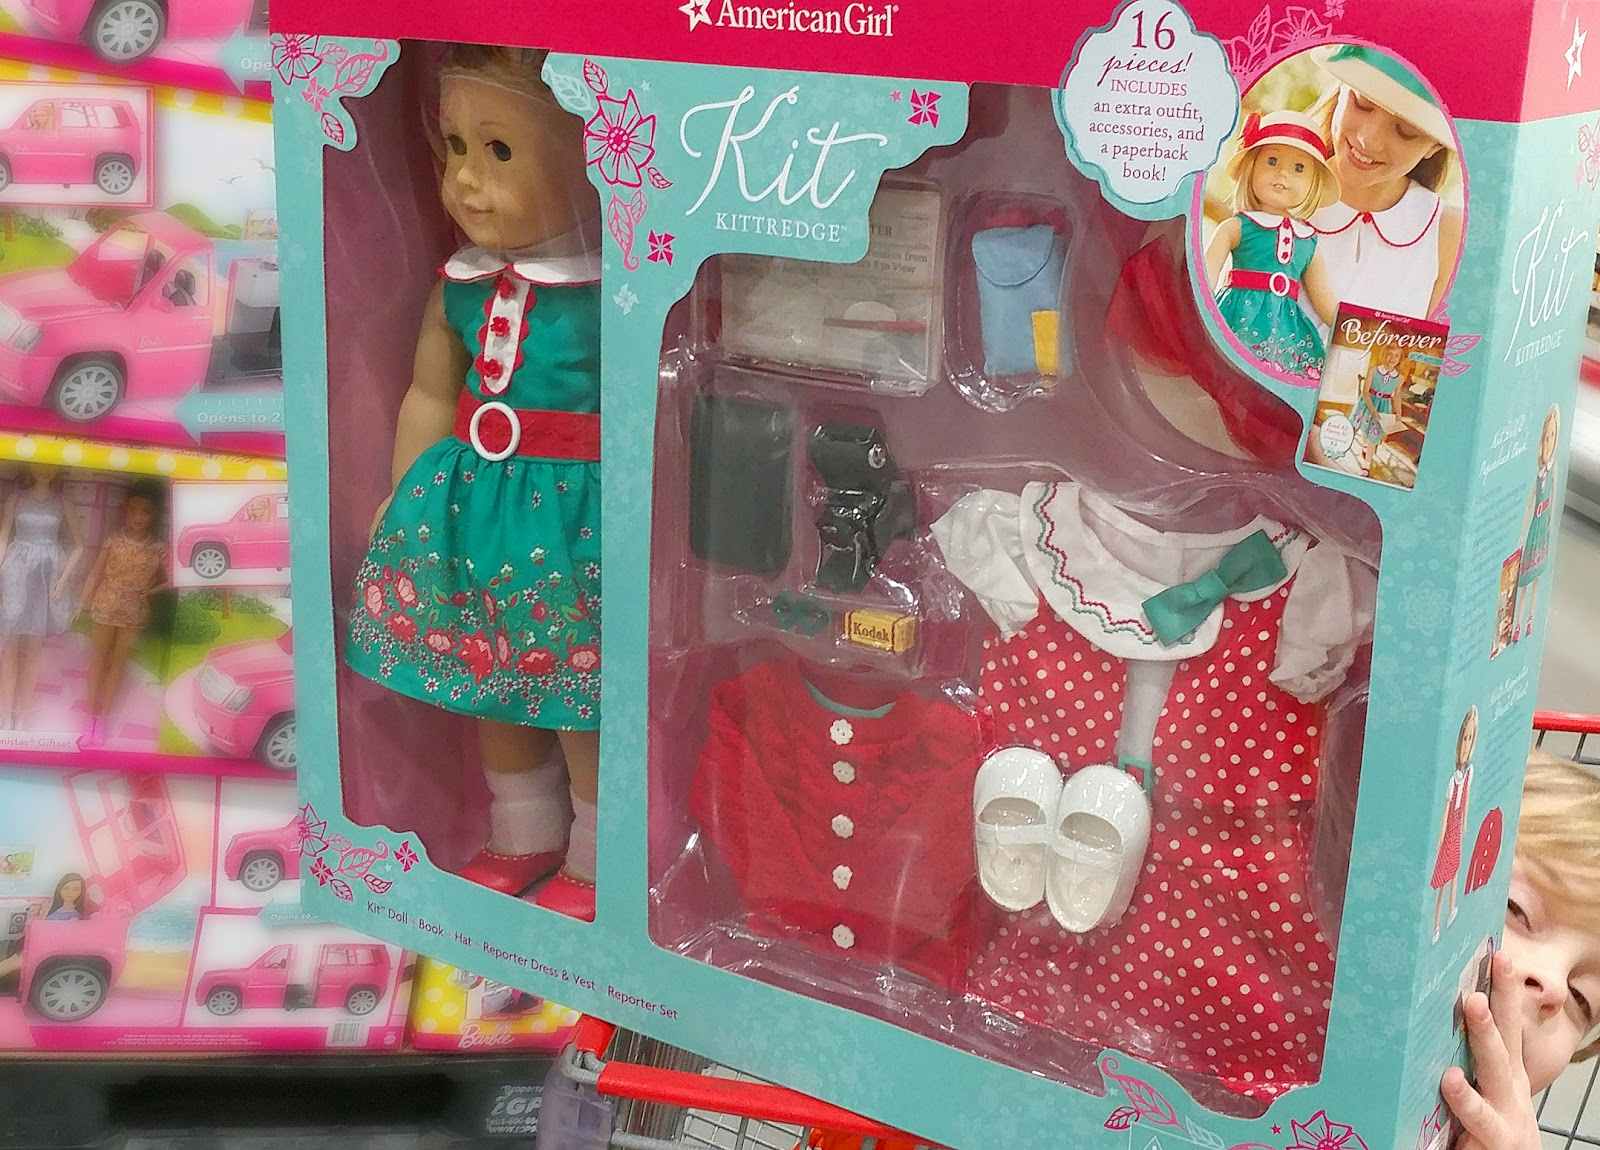 Kittredge doll kit in box at Costco